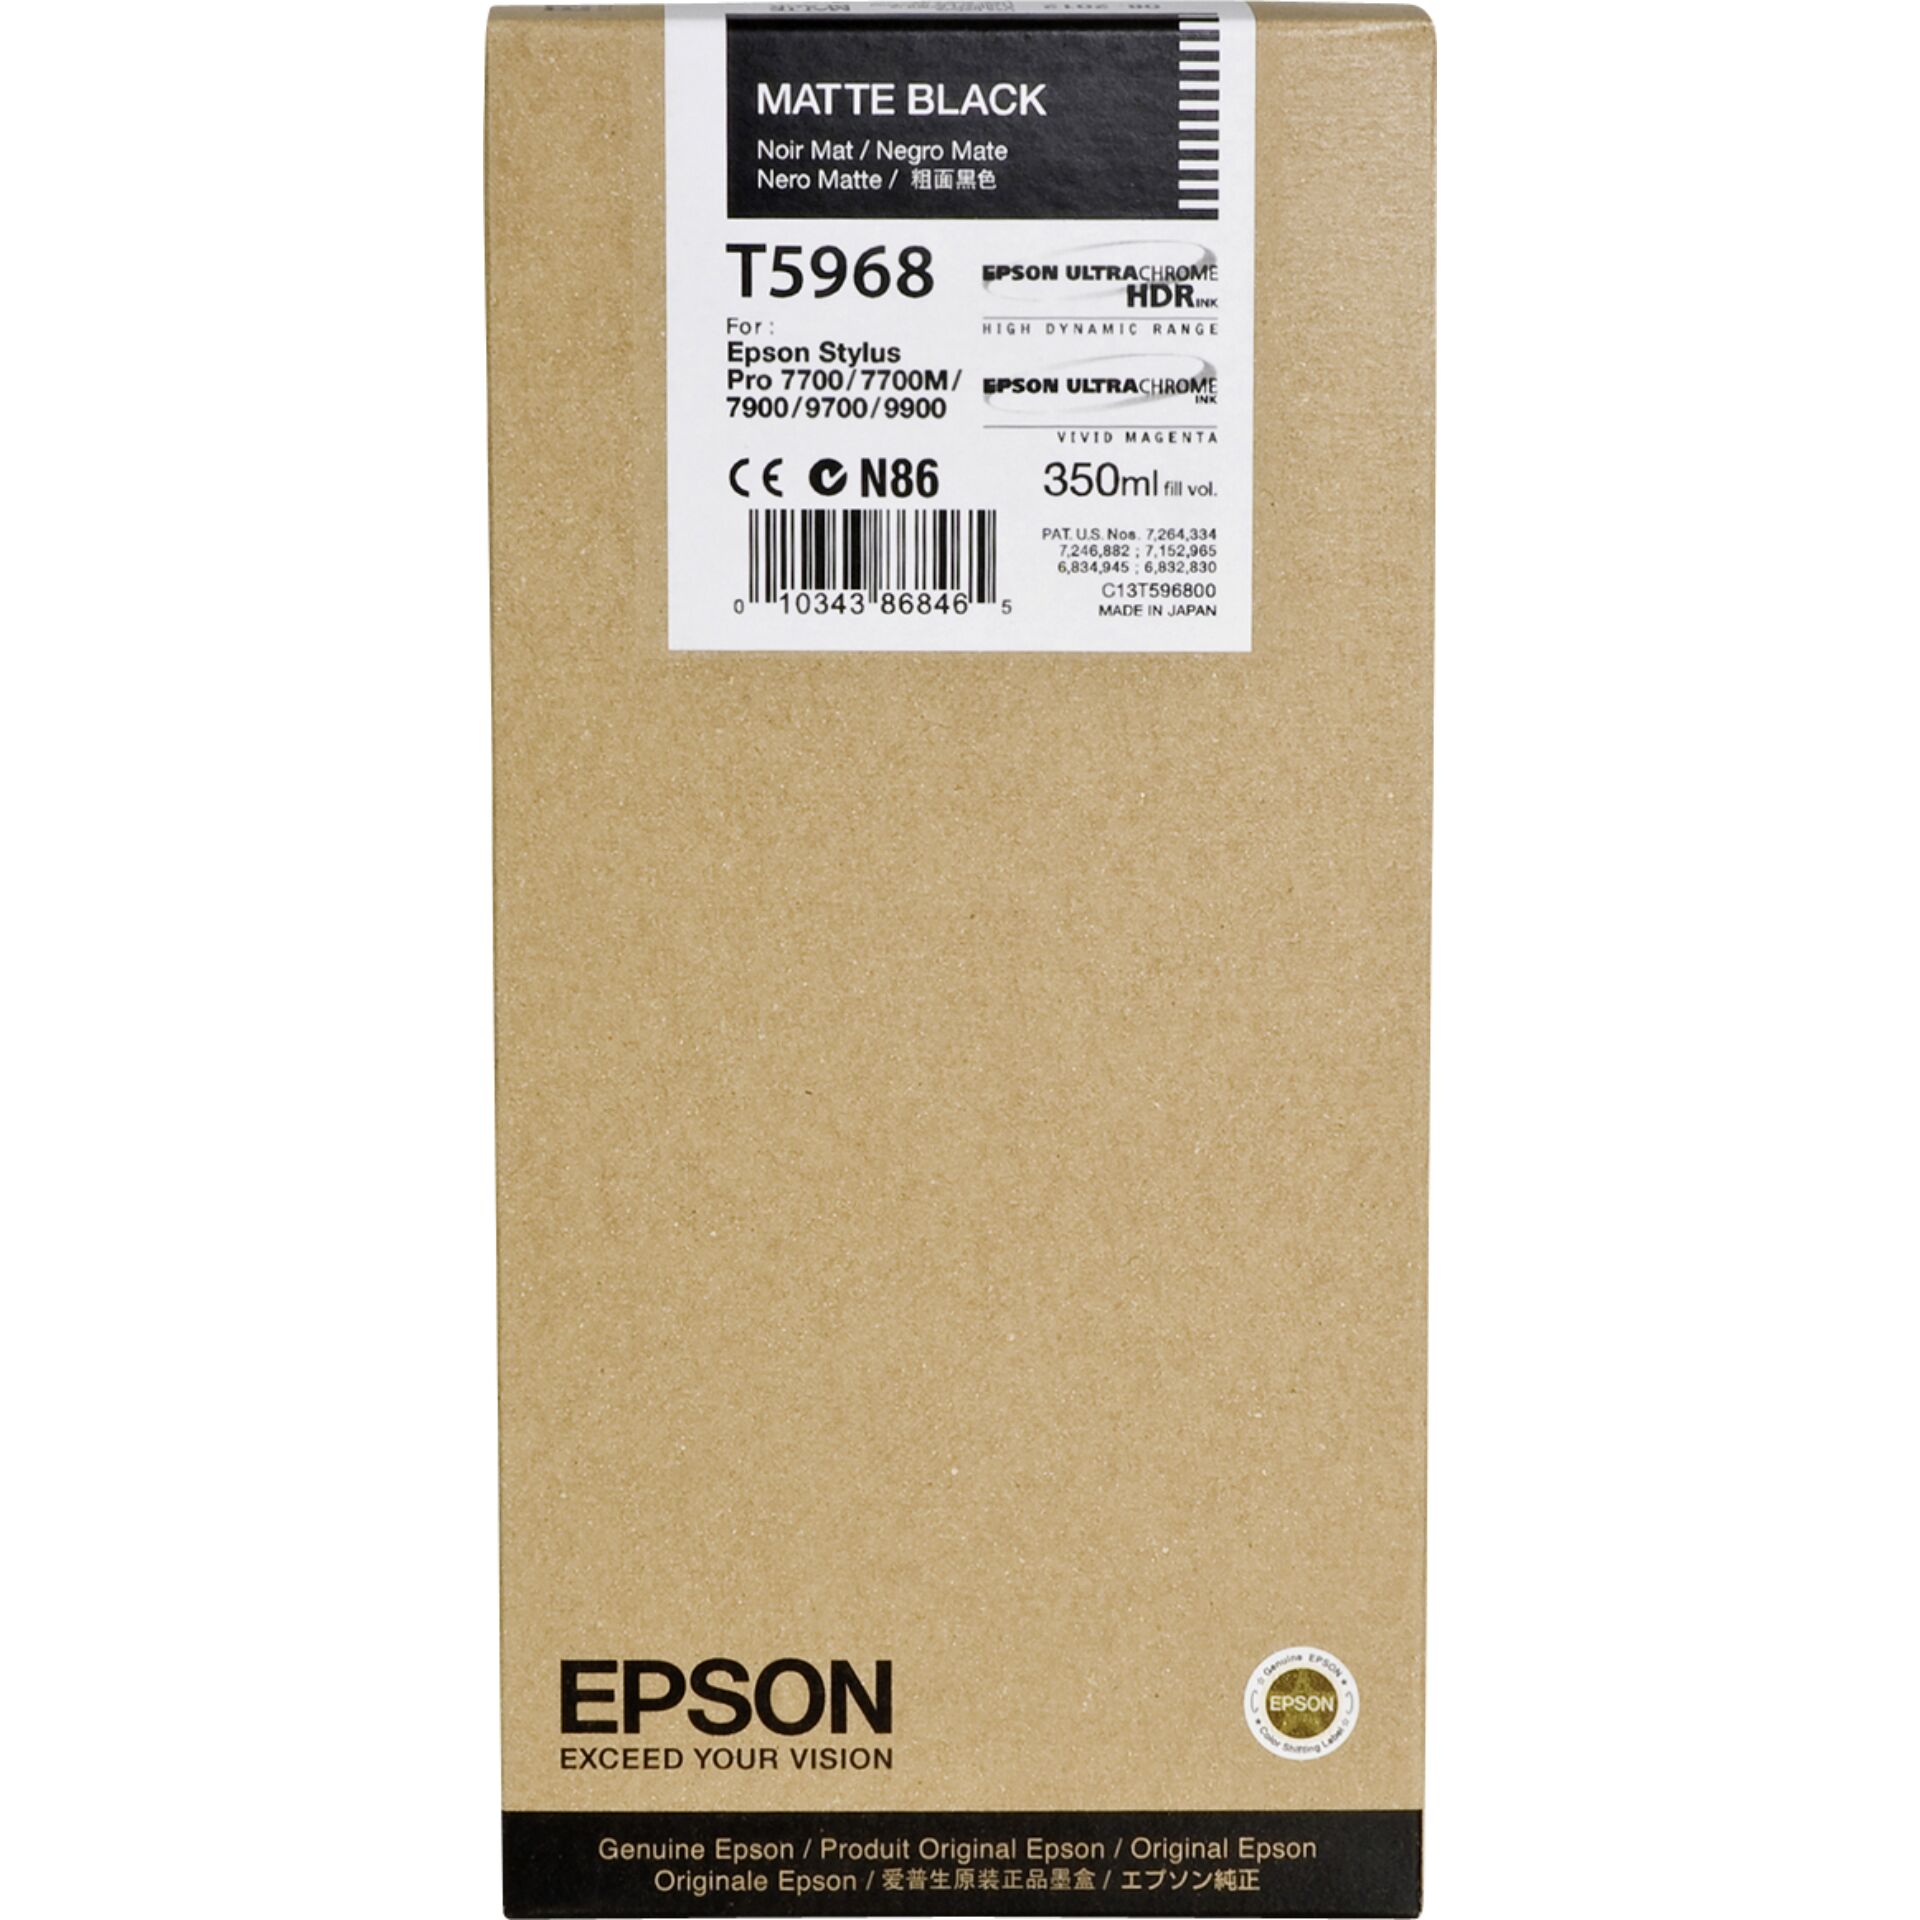 Epson T596800 Tinte schwarz matt 